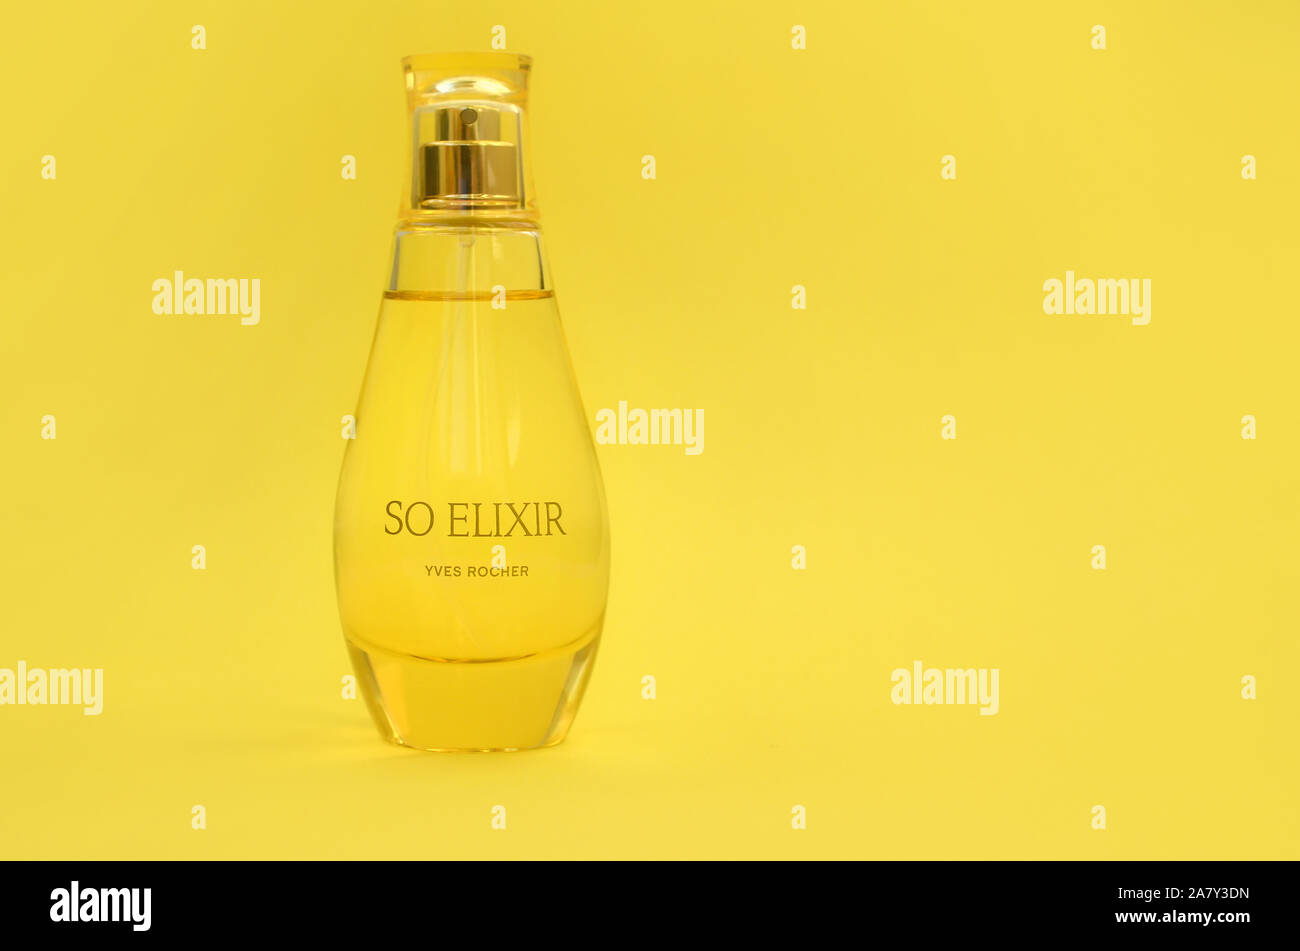 KHARKOV, Ucrania - 21 de octubre de 2019: botella de perfume Elixir por Yves Rocher sobre fondo de color amarillo brillante. Yves Rocher fue pionero de la moderna u Foto de stock